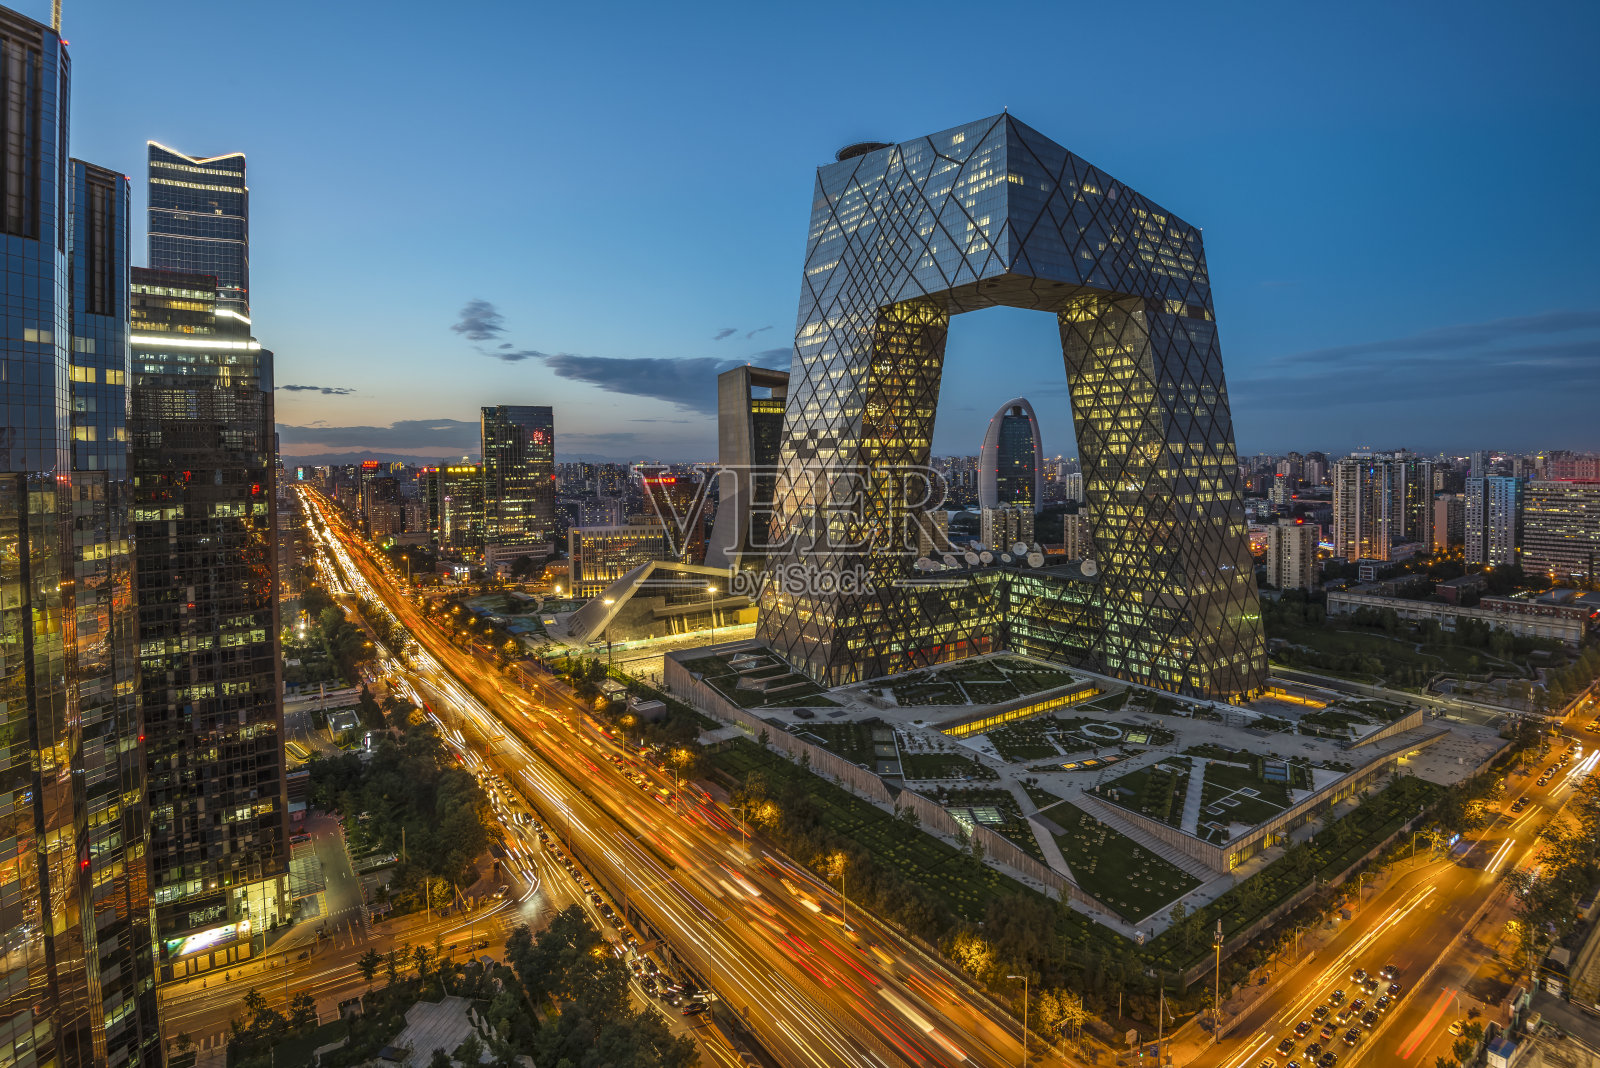 北京嘉德艺术中心-Büro Ole Scheeren-文化建筑案例-筑龙建筑设计论坛